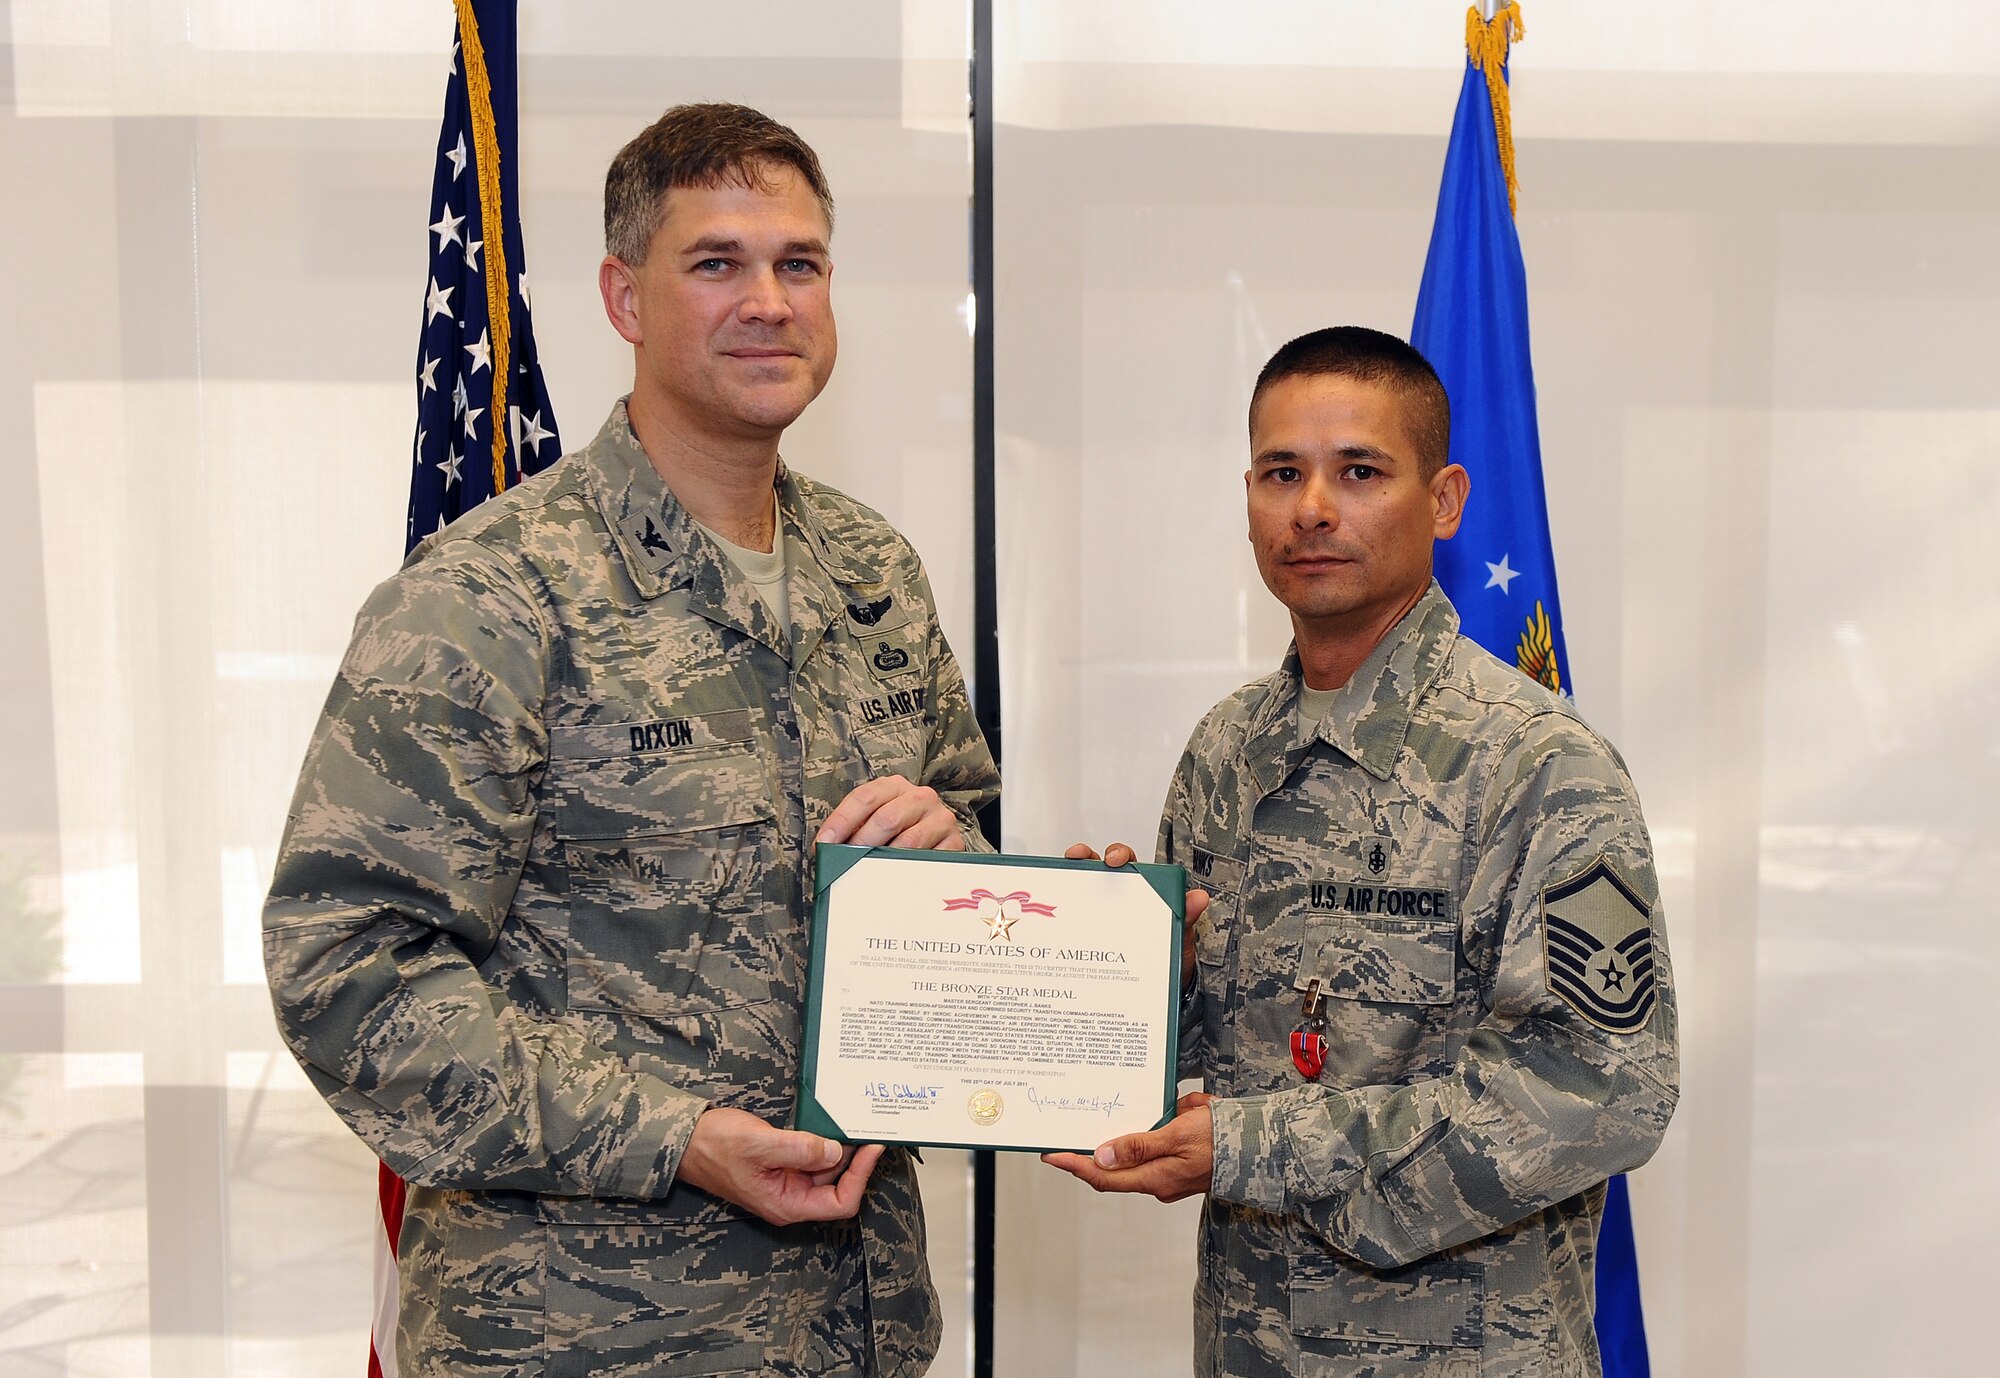 Offutt Airman earns Bronze Star > Offutt Air Force Base > Article Display